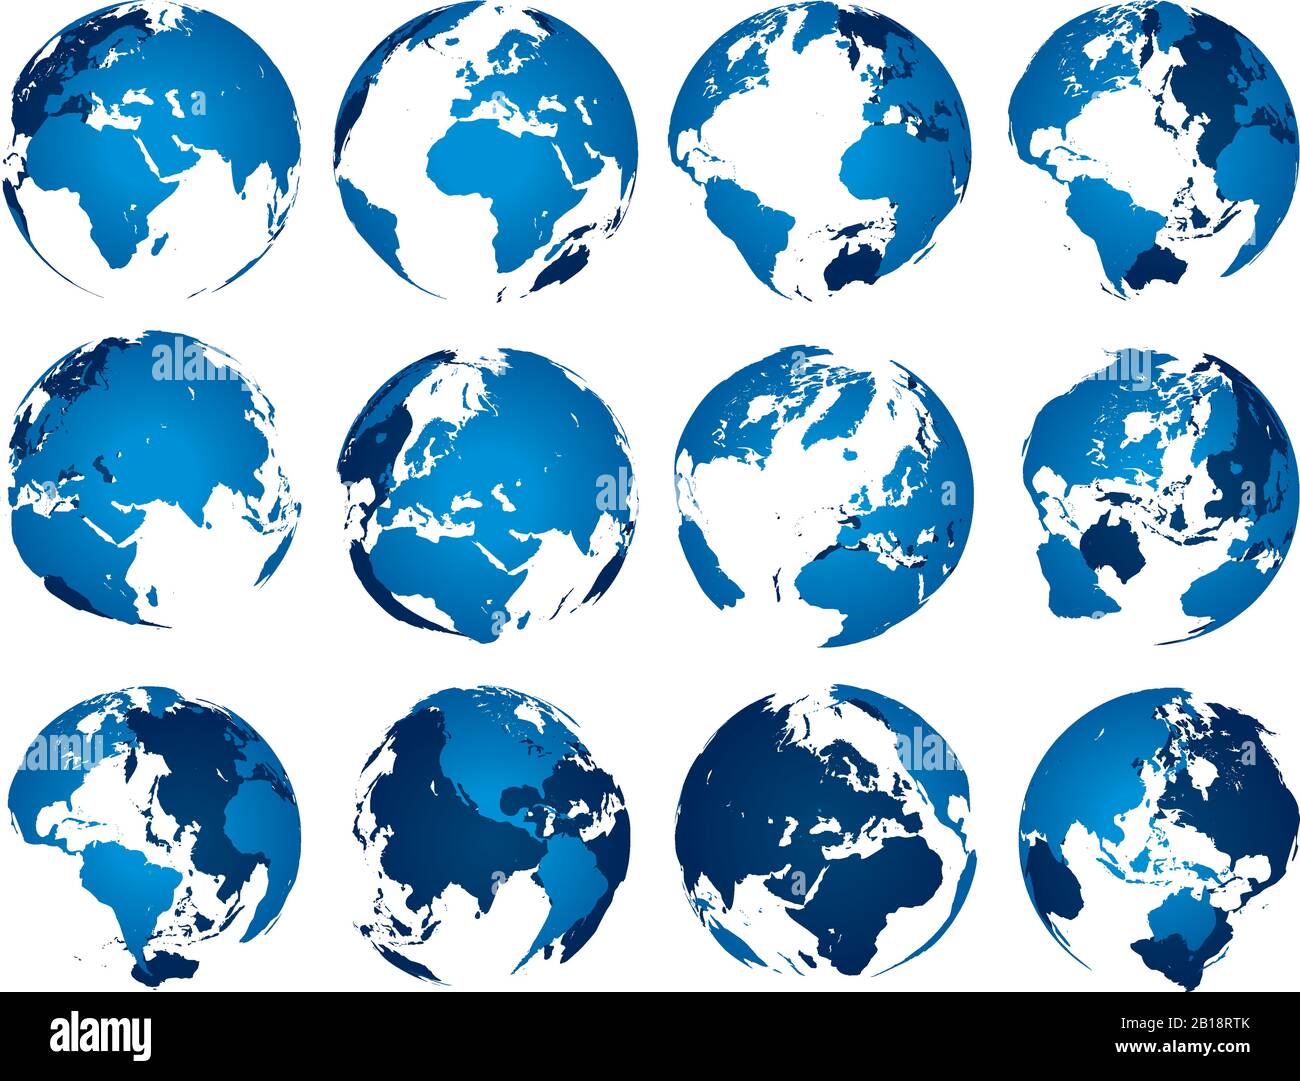 Globe terrestre bleu. Silhouette de Globes SPHERE, cartes europe asie et amérique. Ensemble de vecteurs   isolés de carte de terre Illustration de Vecteur